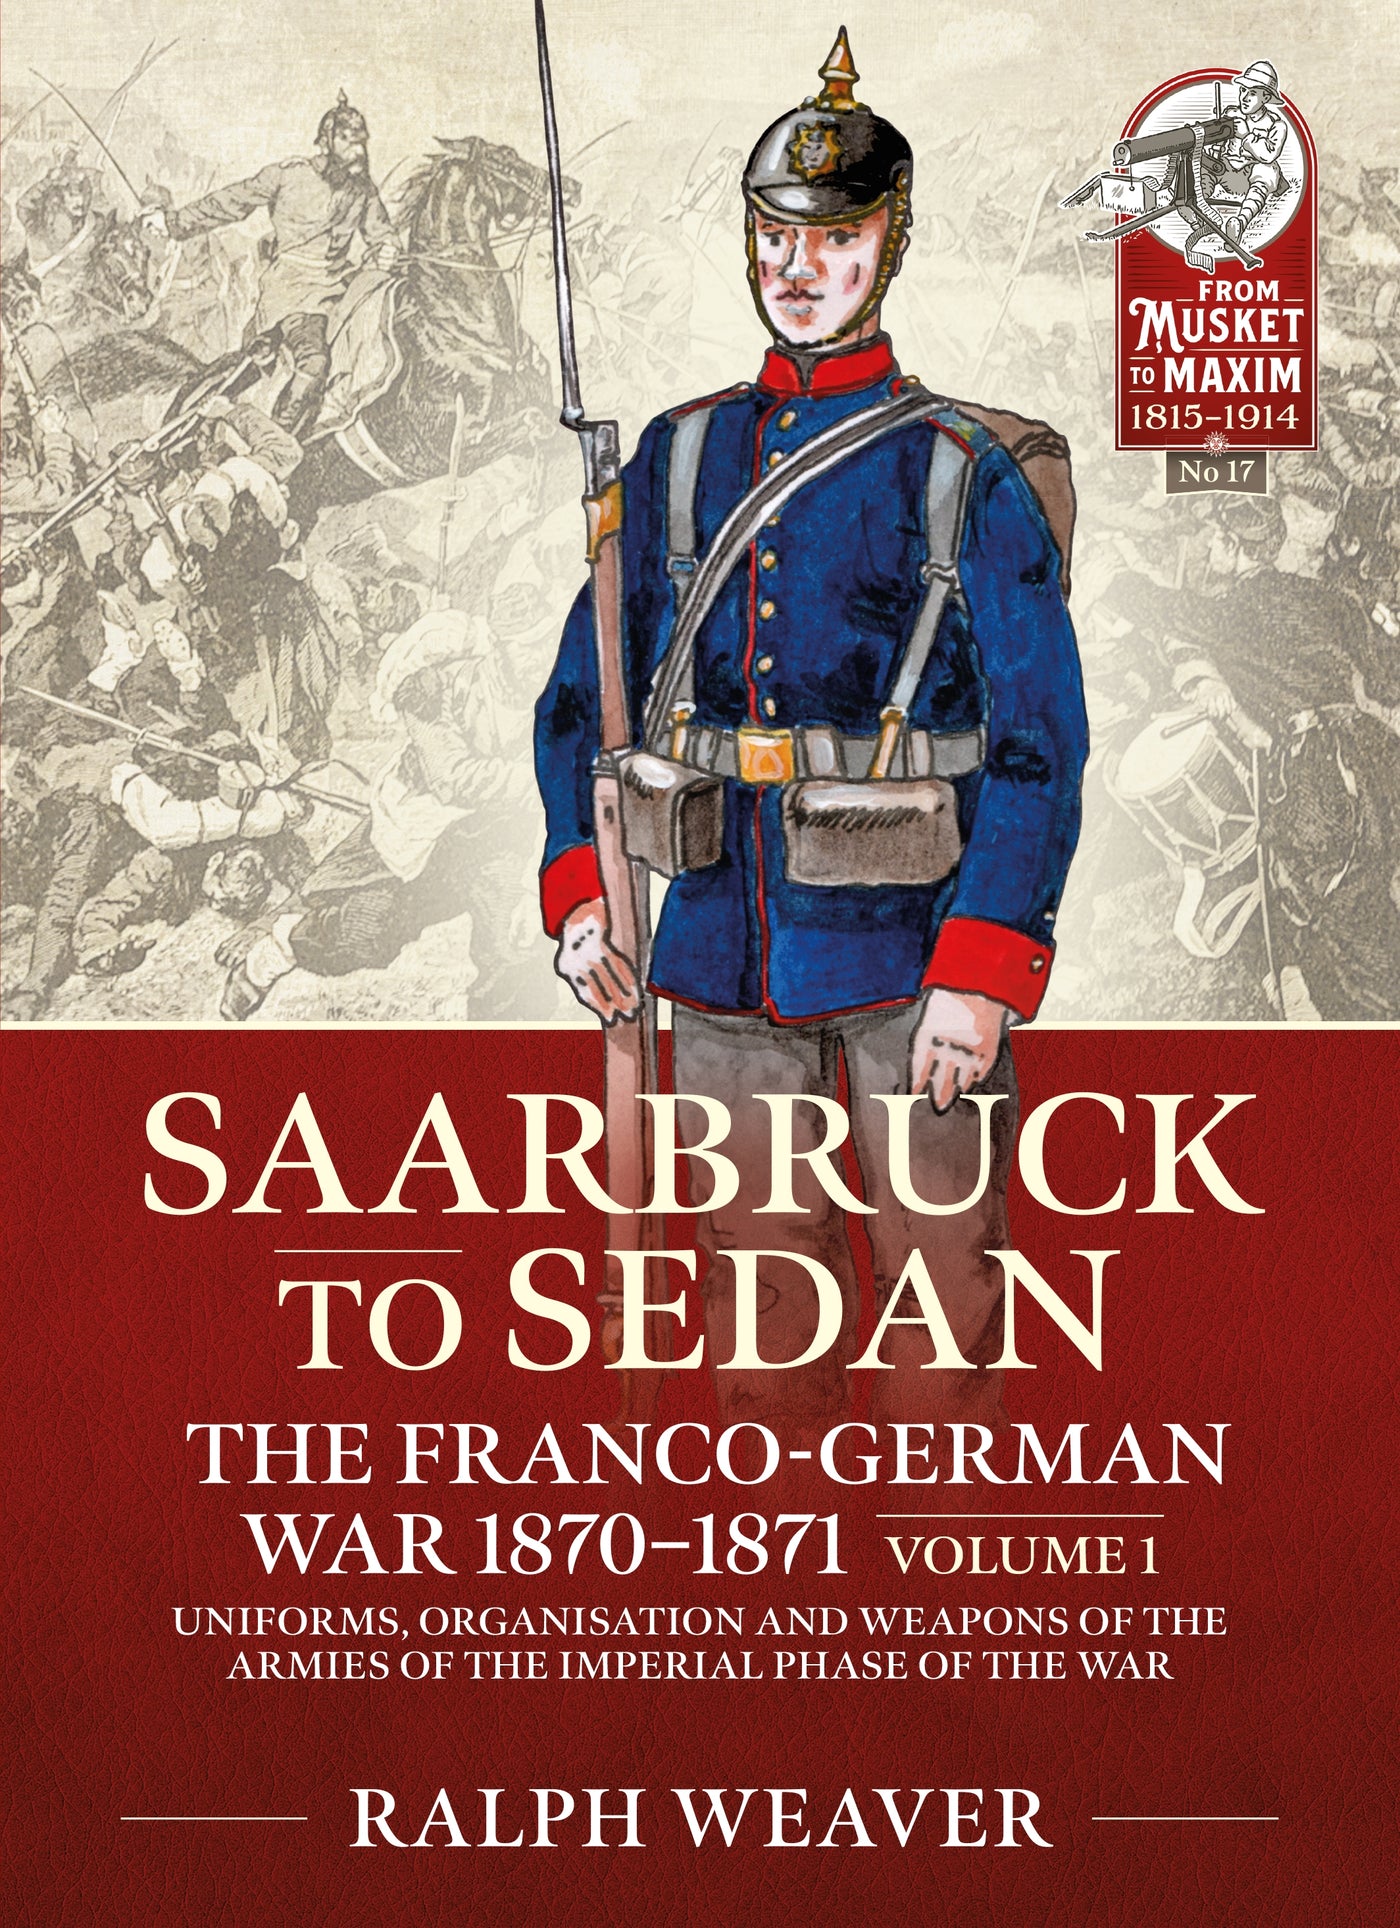 Saarbruck to Sedan: The Franco-German War 1870-1871